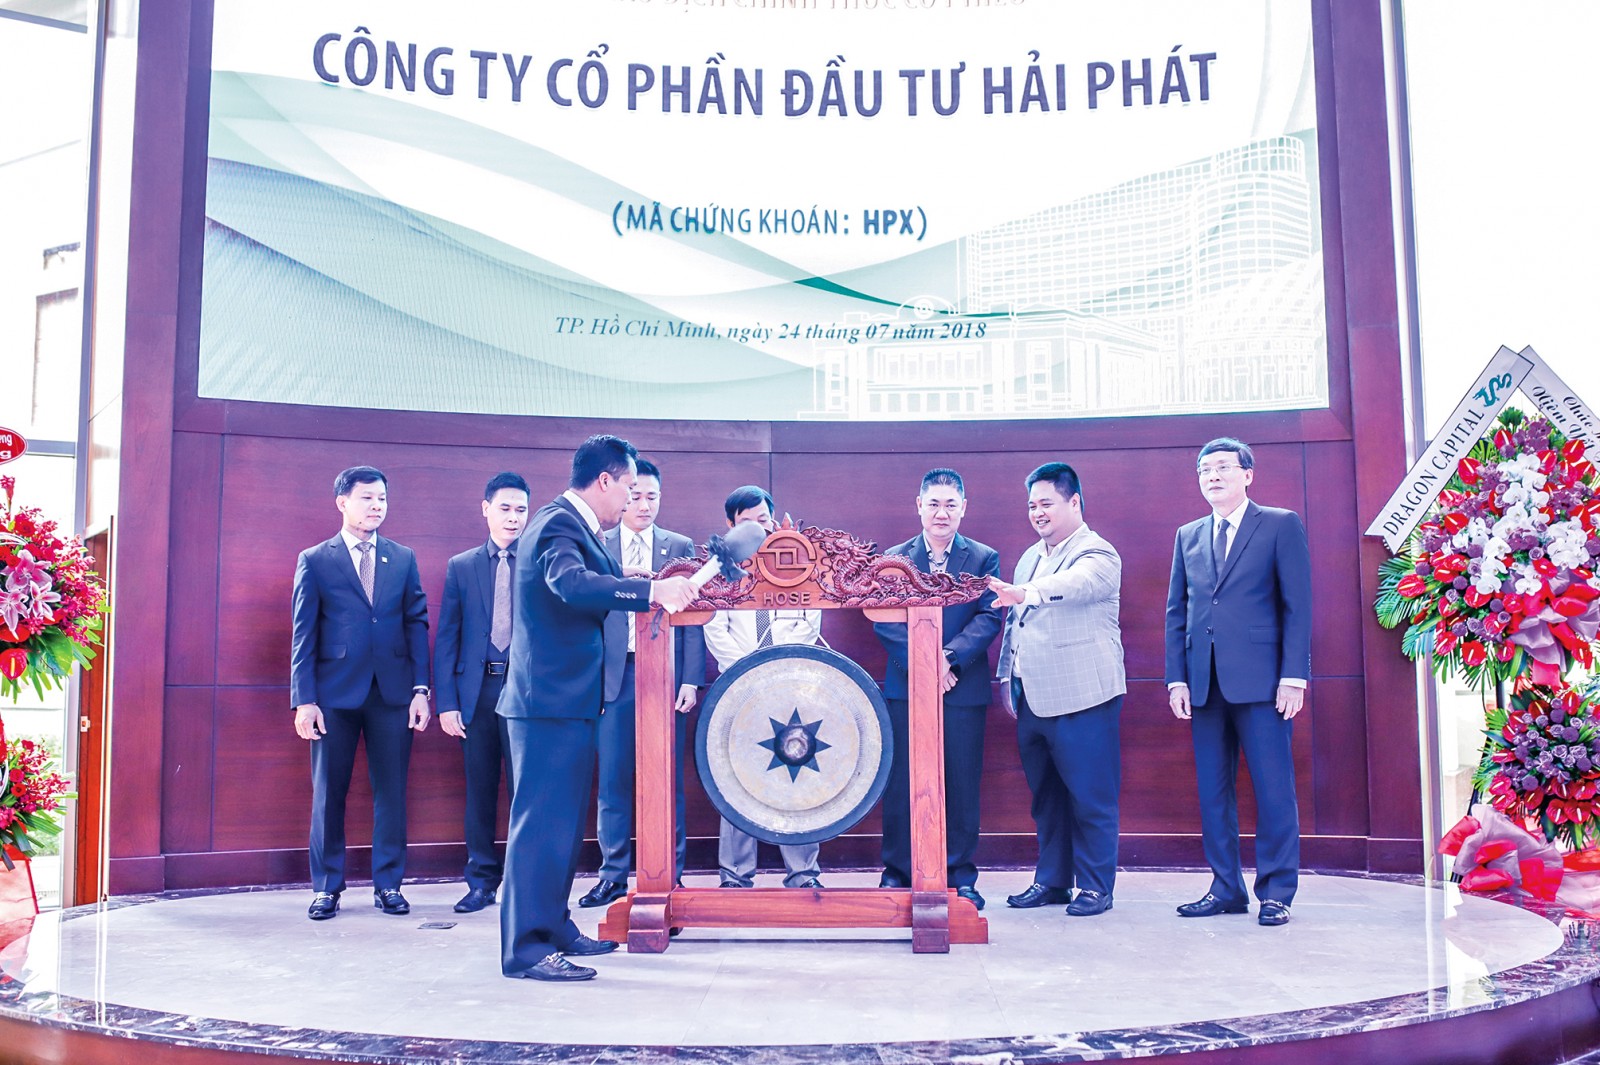 Ông Đỗ Quý Hải – Chủ tịch HĐQT Hải Phát Invest thực hiện nghi lễ gõ cồng đánh dấu phiên giao dịch đầu tiên của cổ phiếu HPX.